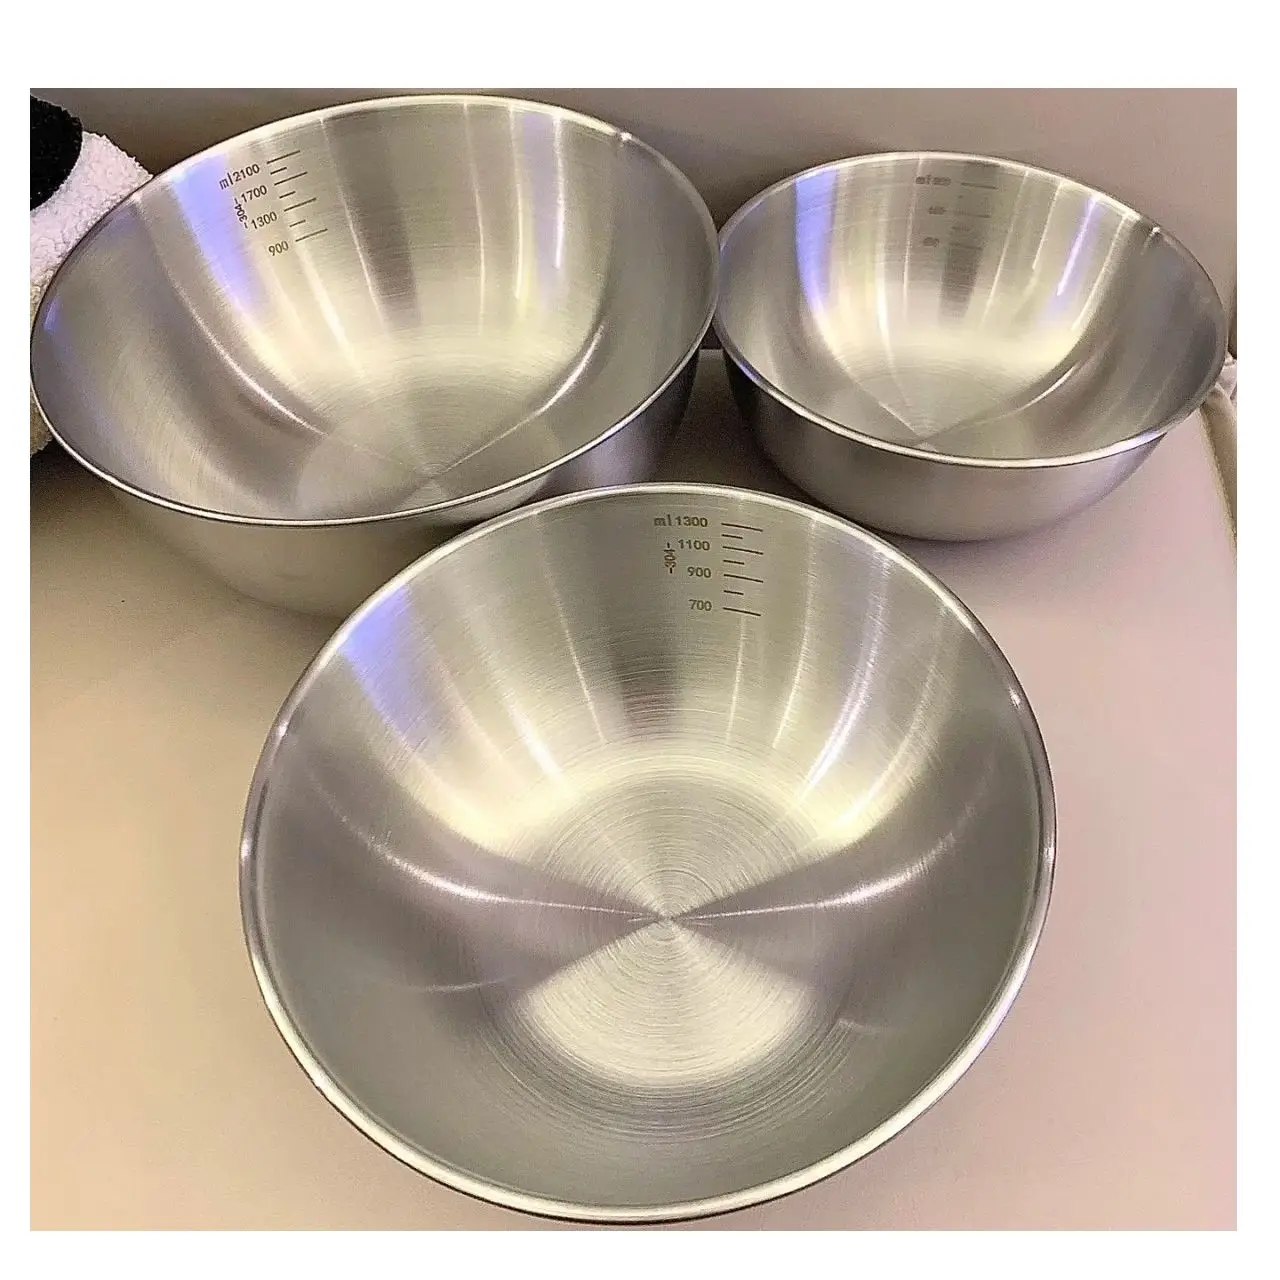 3pcs Aço Inoxidável Tigelas De Mistura Cozinha Salad Bowls Set Nesting Storage Bowl Baking Acessório Com Escala